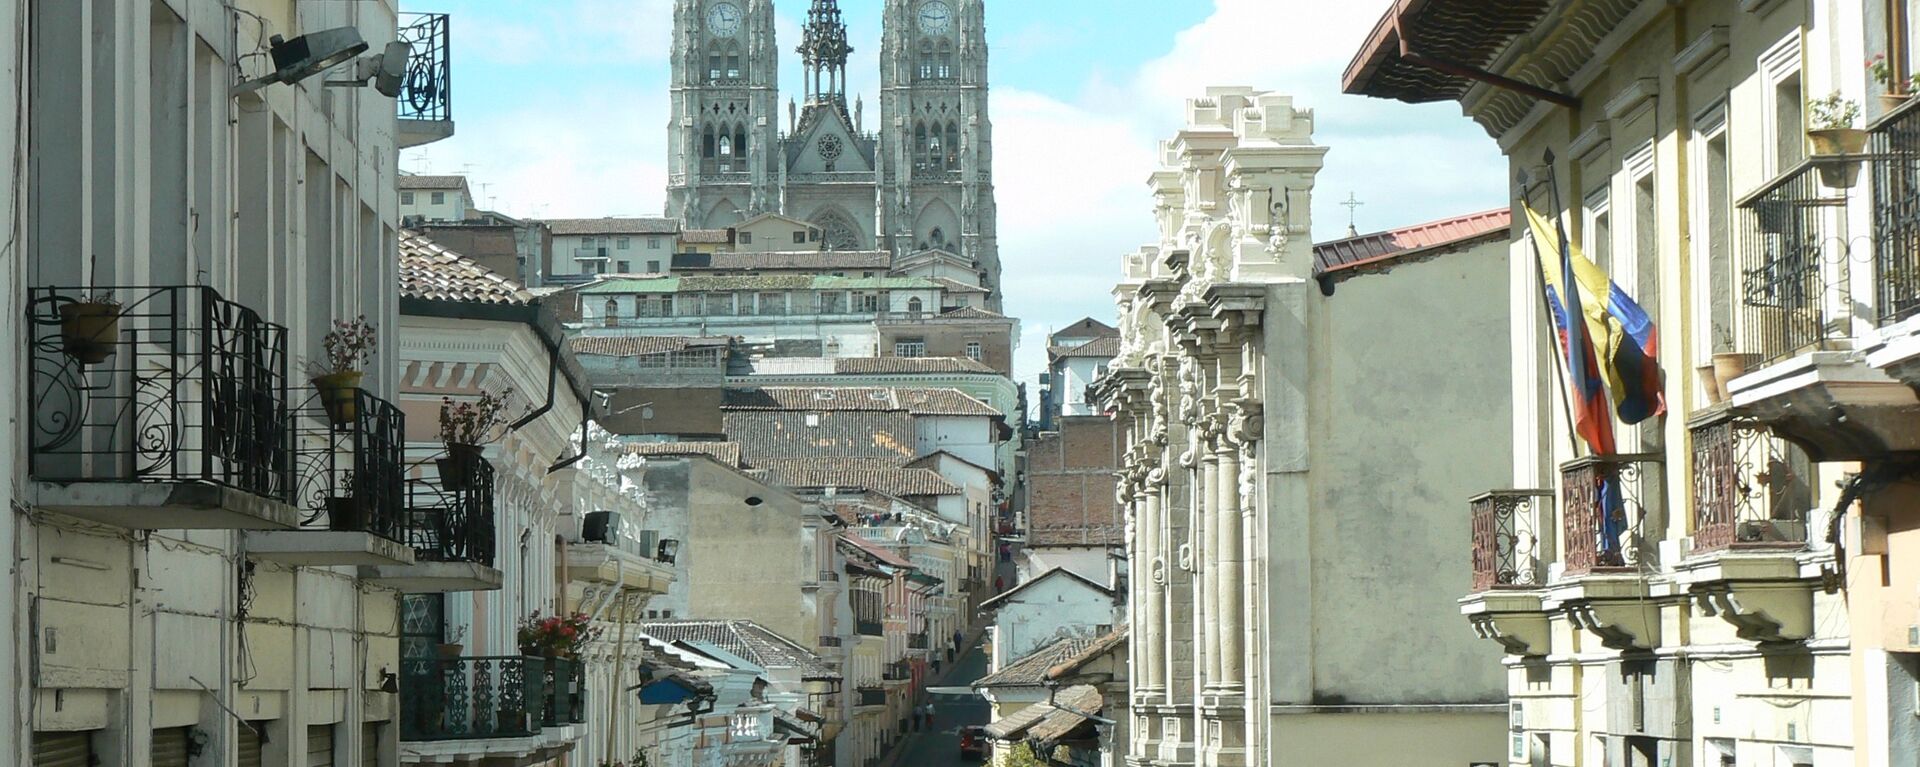 Casco histórico de Quito, capital de Ecuador - Sputnik Mundo, 1920, 30.03.2021